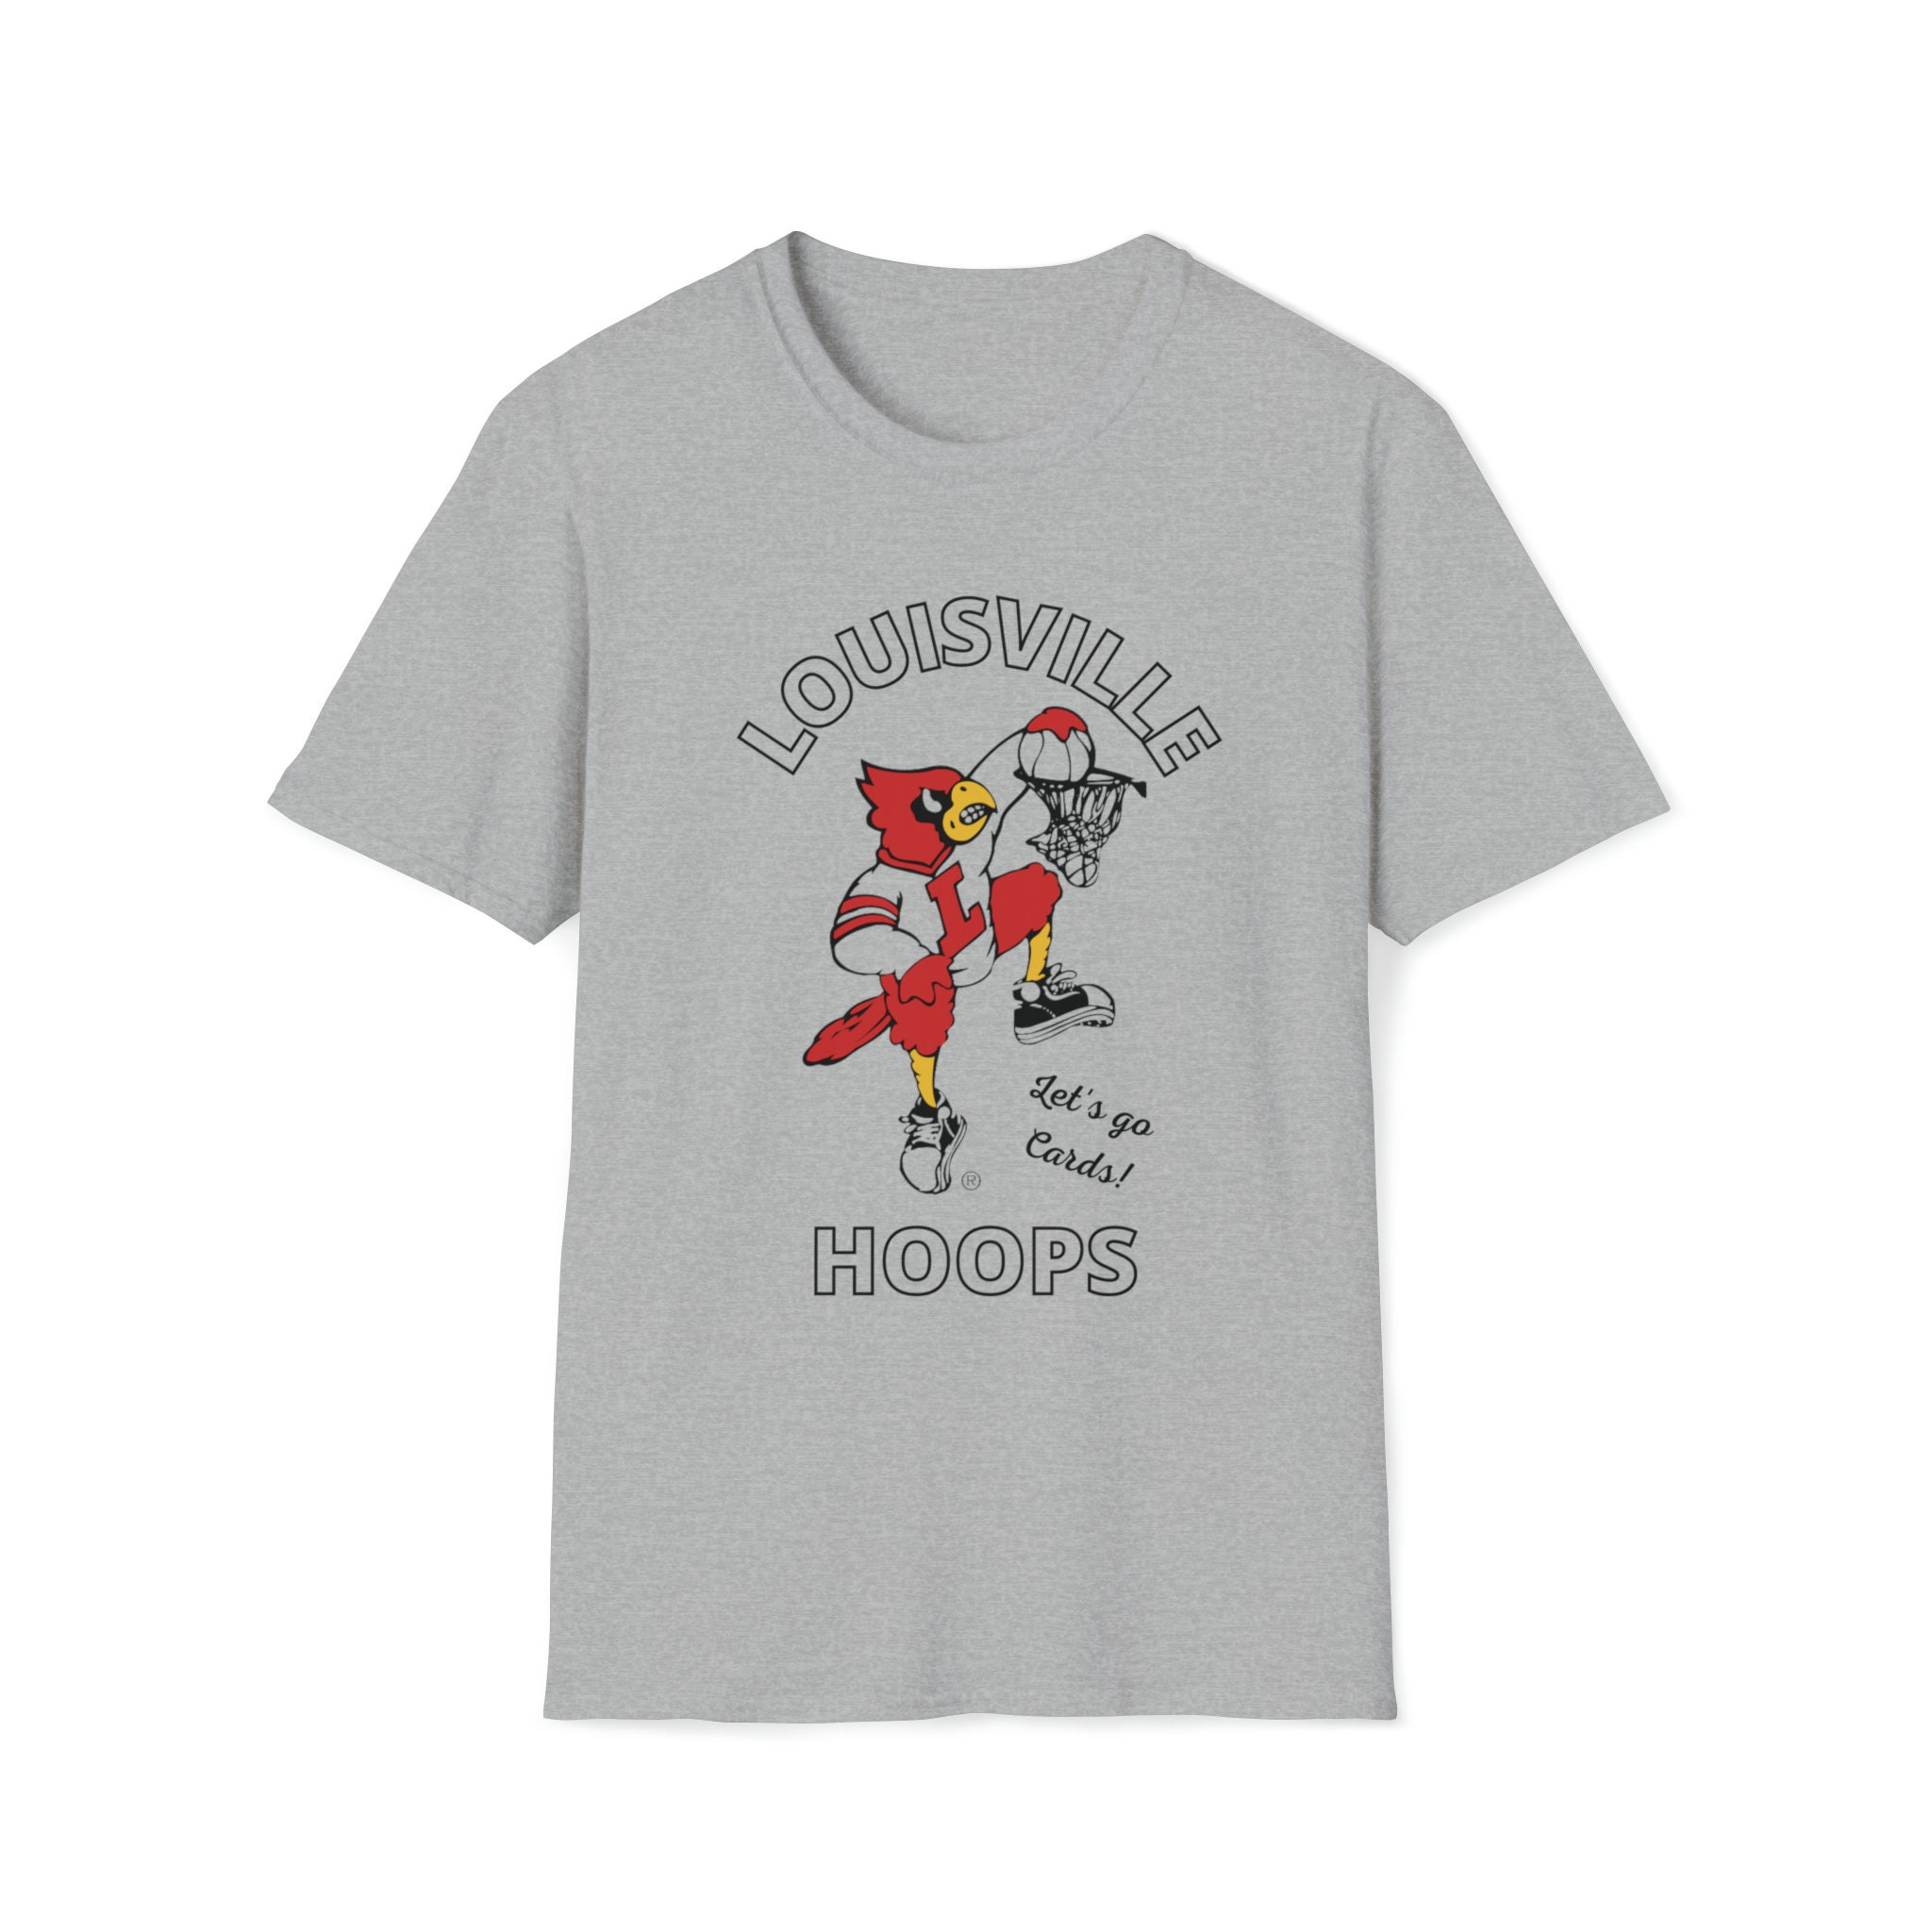 Fuck Kentucky - Louisville Cardinals Shirt - Box Ver - Beef Shirts